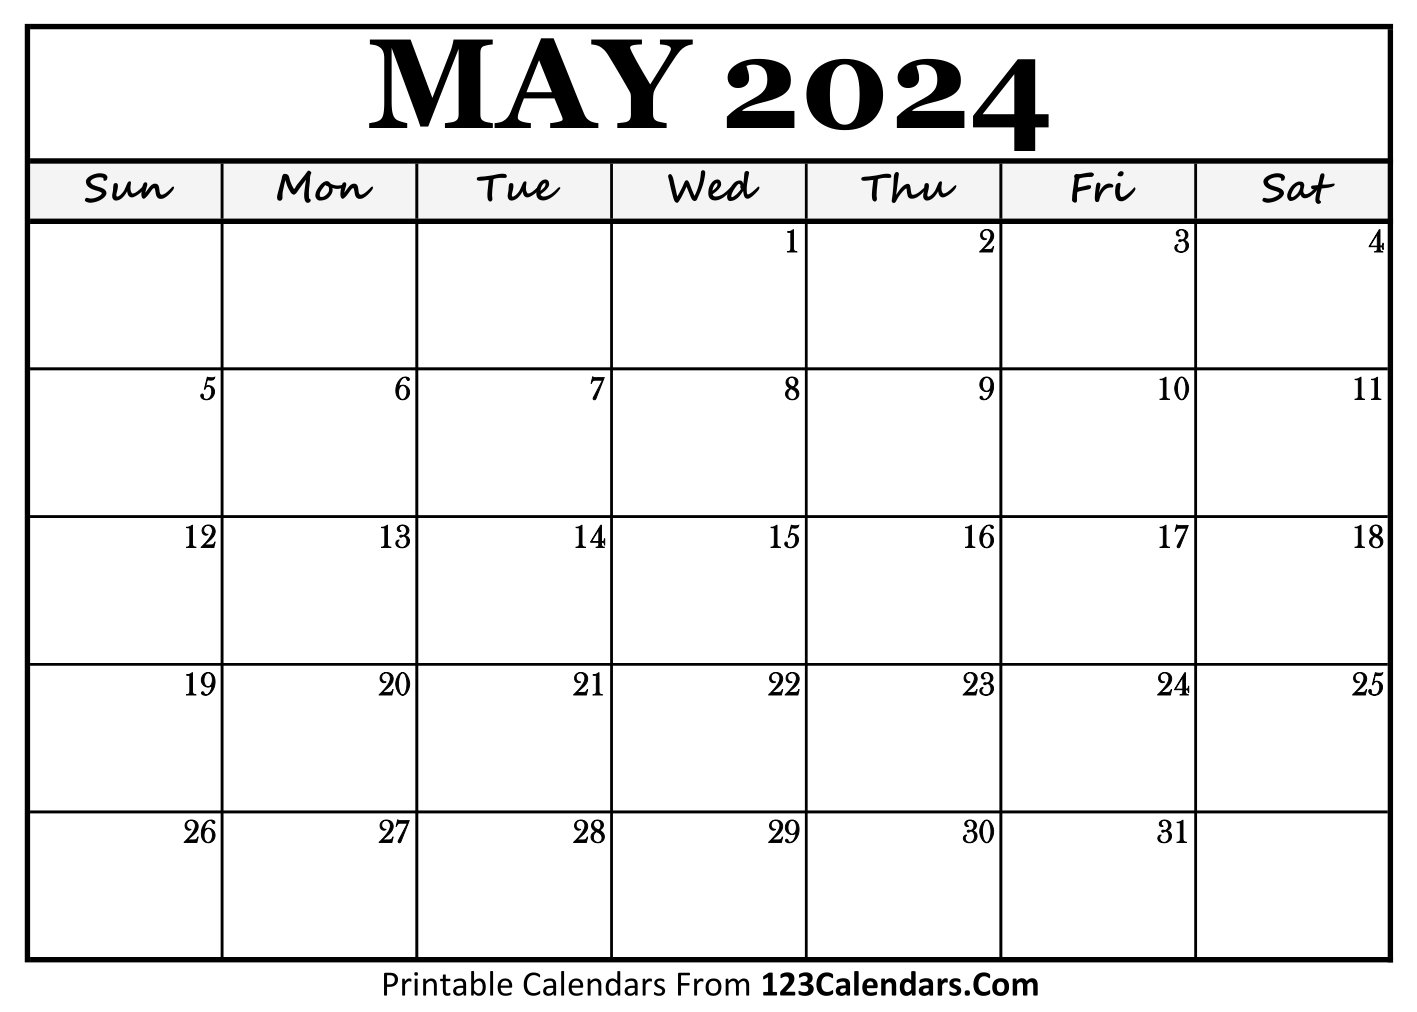 Calendar May 2024